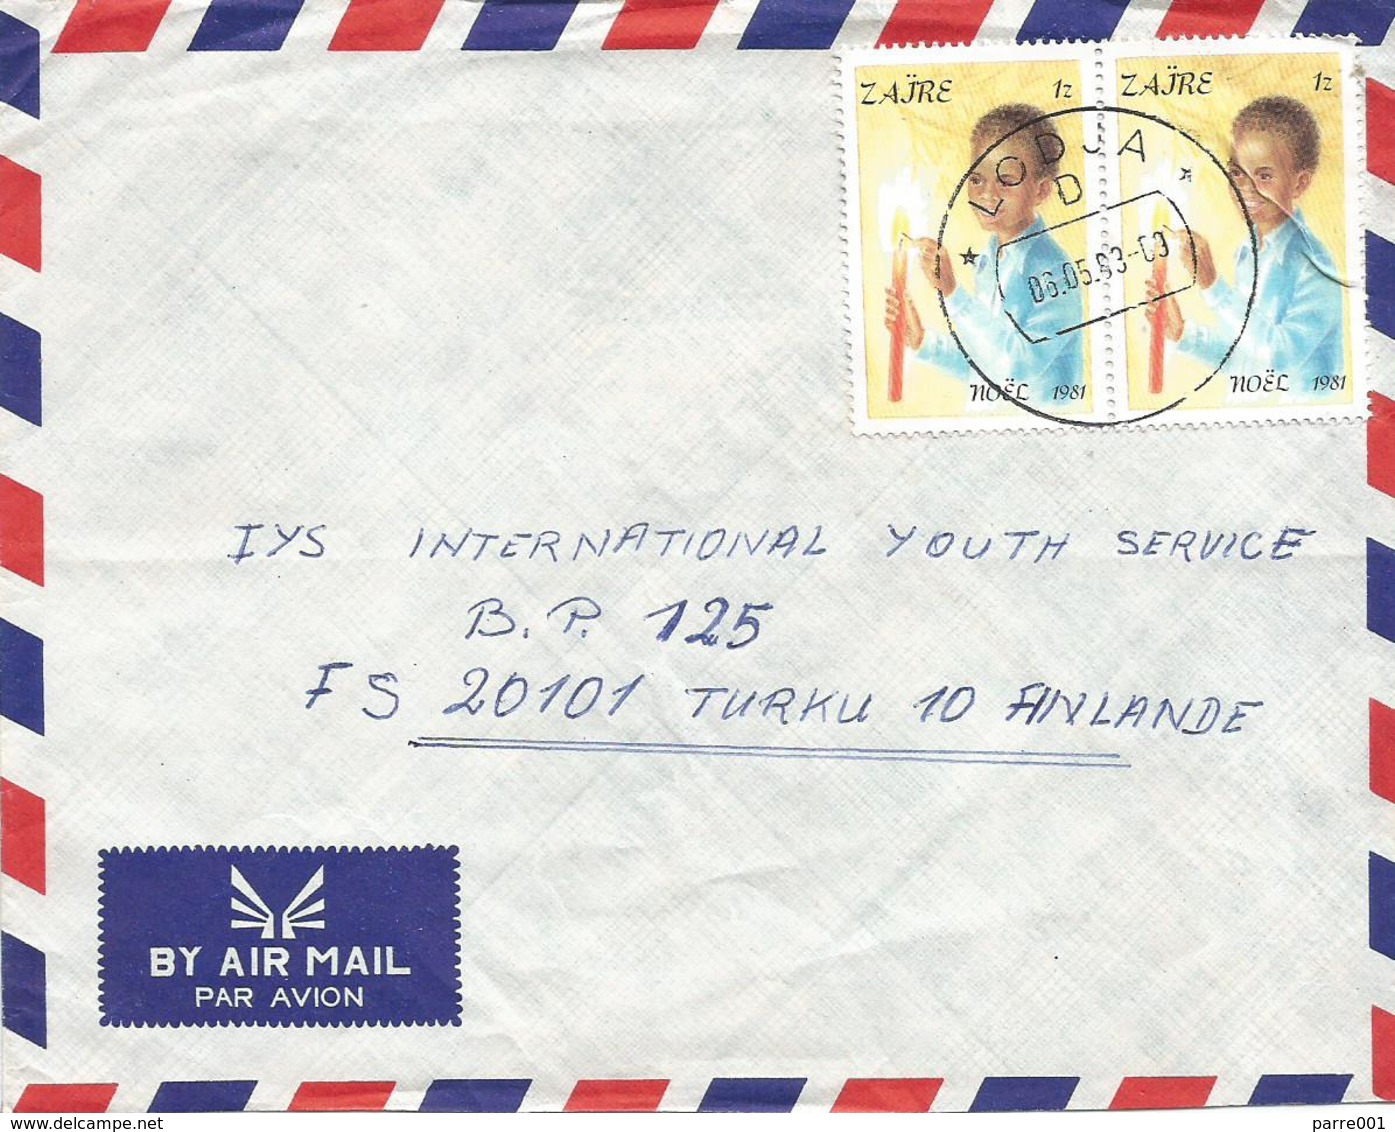 DRC RDC Zaire Congo 1983 Lodja Code Letter D Noel Christmas Candle 1Z Cover - Oblitérés